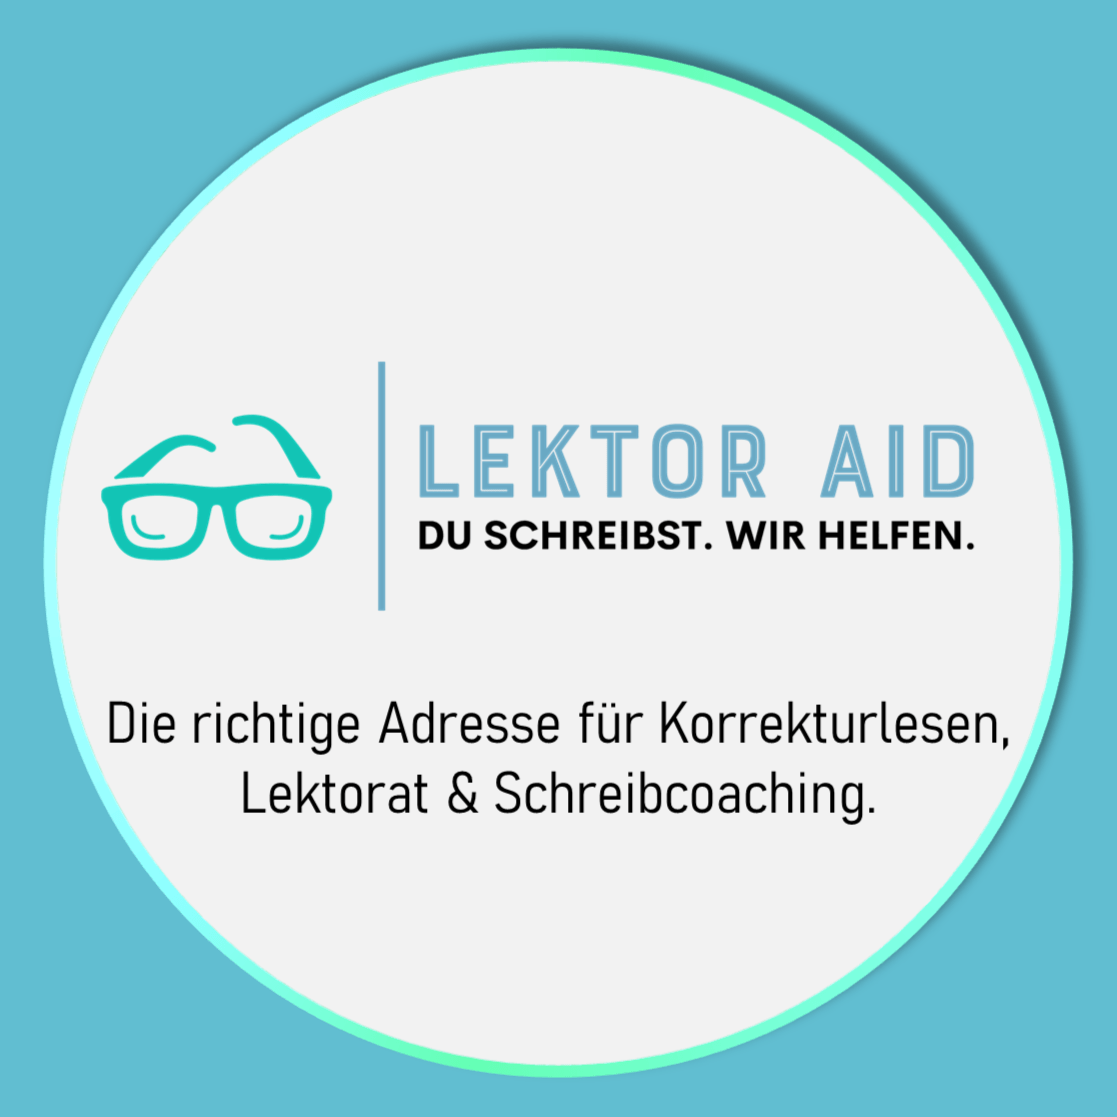 Lektor Aid - Korrekturlesen, Lektorat, Schreibcoaching. Wien, Österreich.